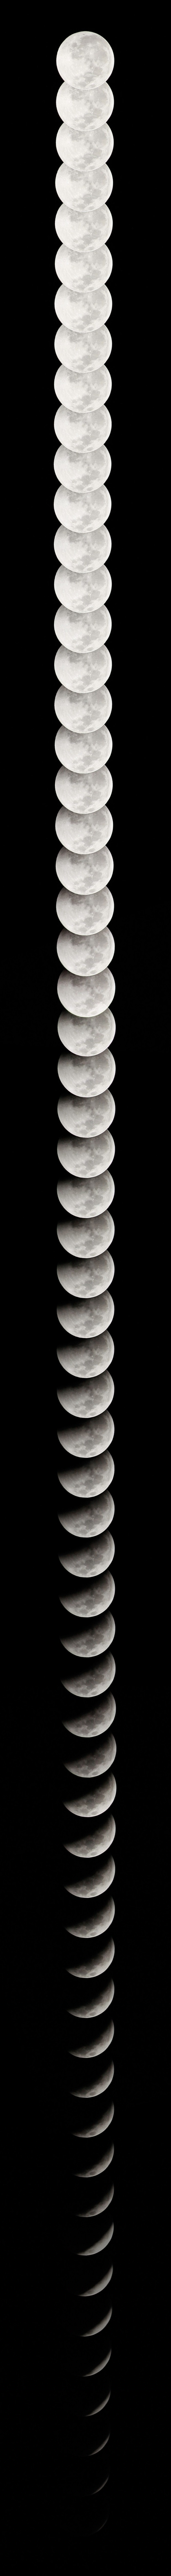 fases-lunares